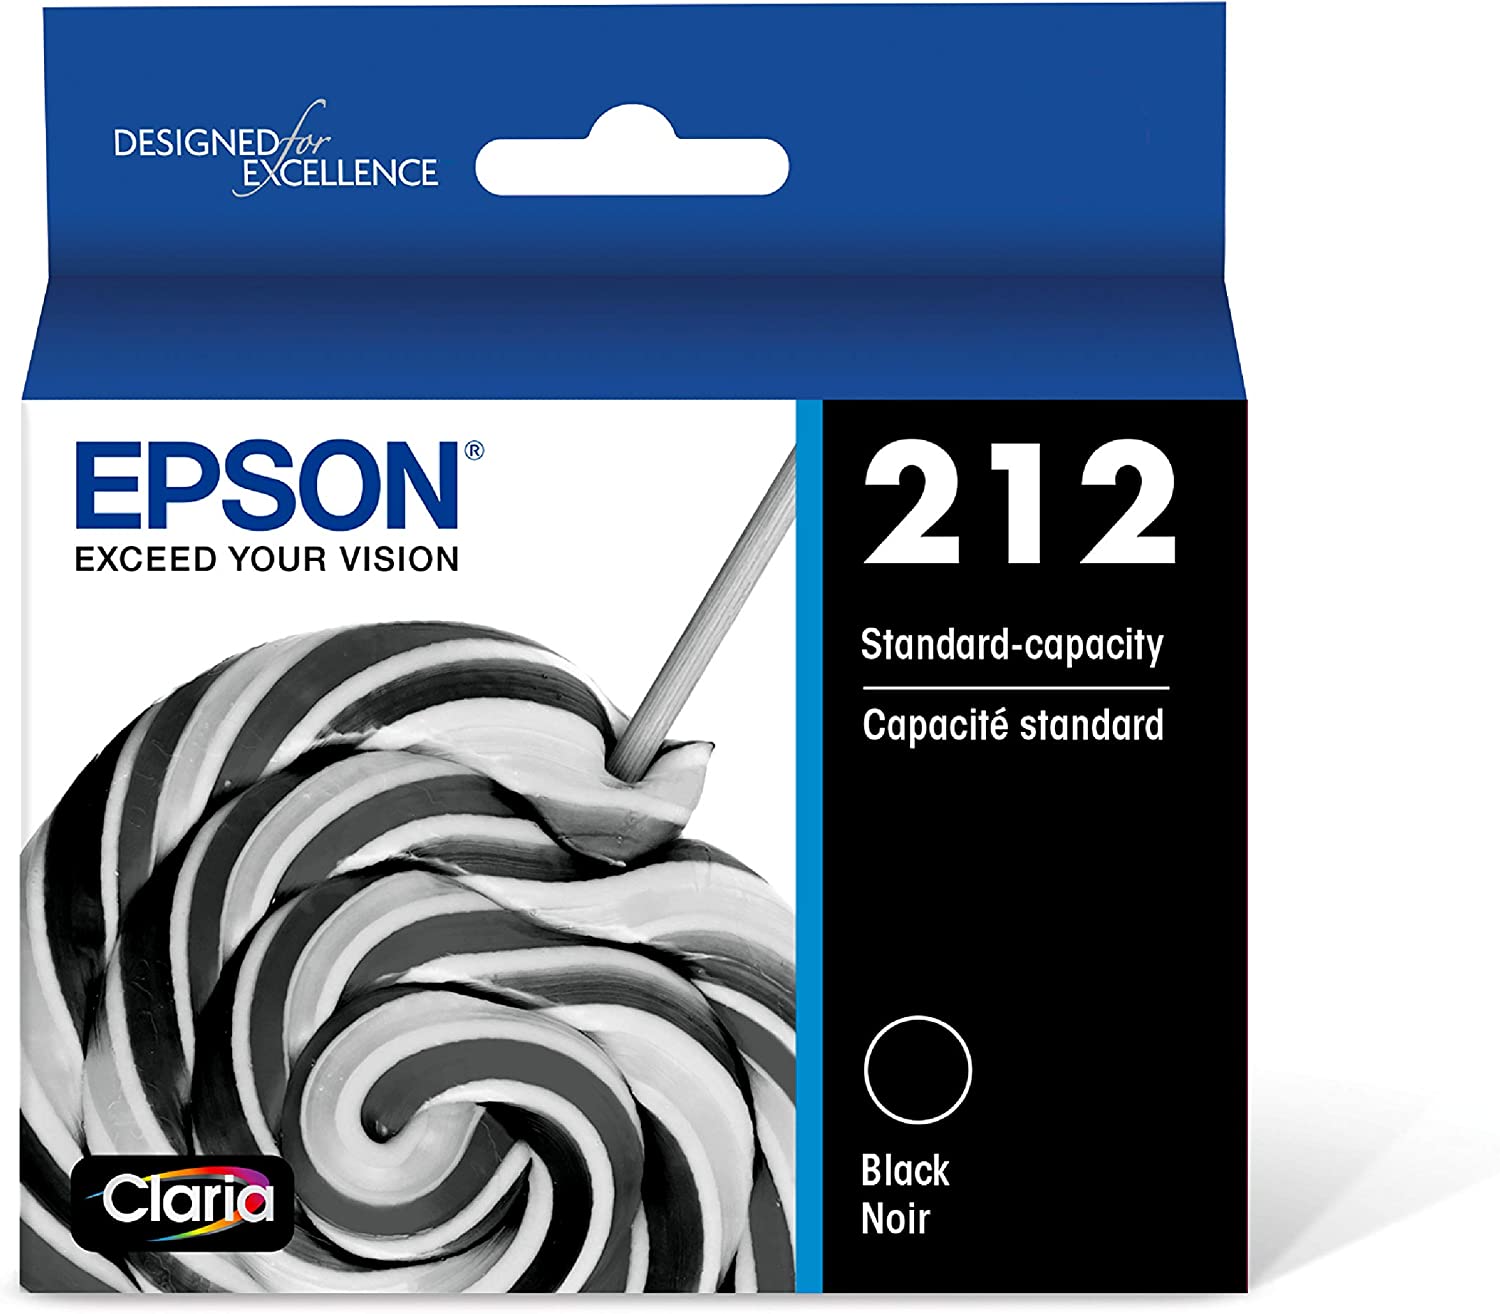 EPSON T212 Claria - 잉크 표준 용량 블랙 - 엡손 표현식 및 워크포스 프린터용 카트리지 (T212120-S)